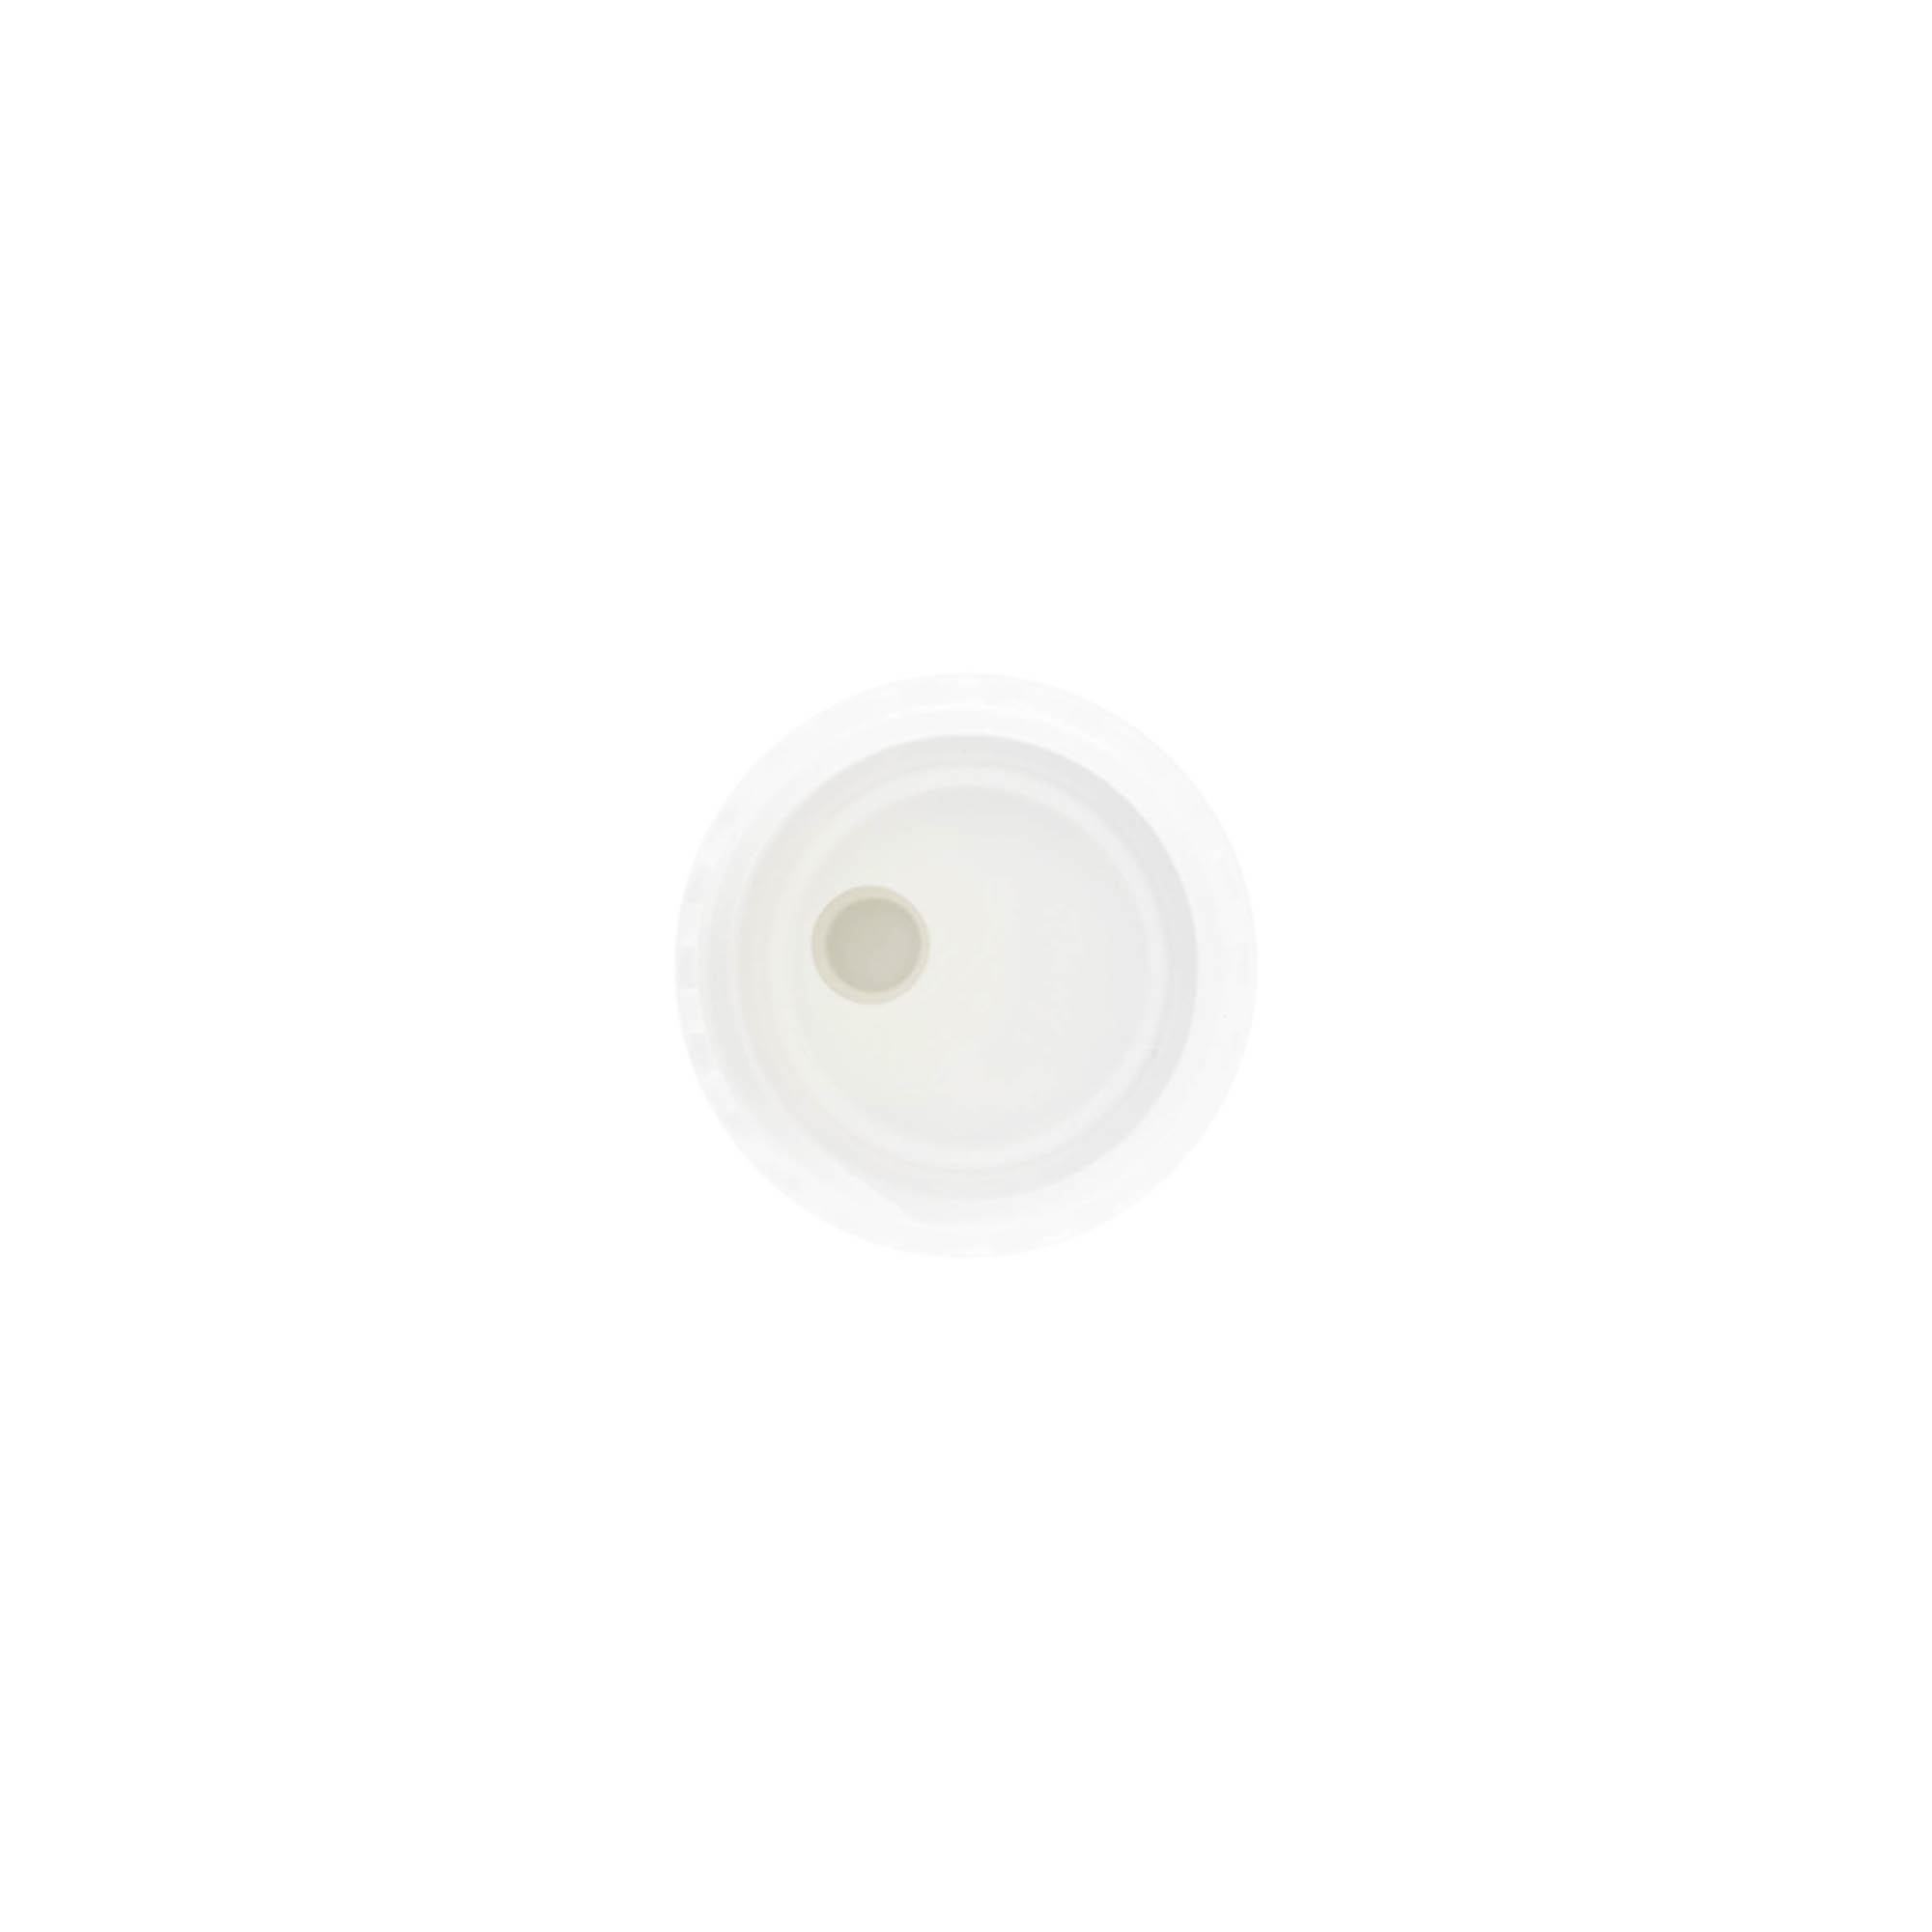 Šroubovací uzávěr Disc Top, plast PP, bílý, pro ústí: GPI 24/410